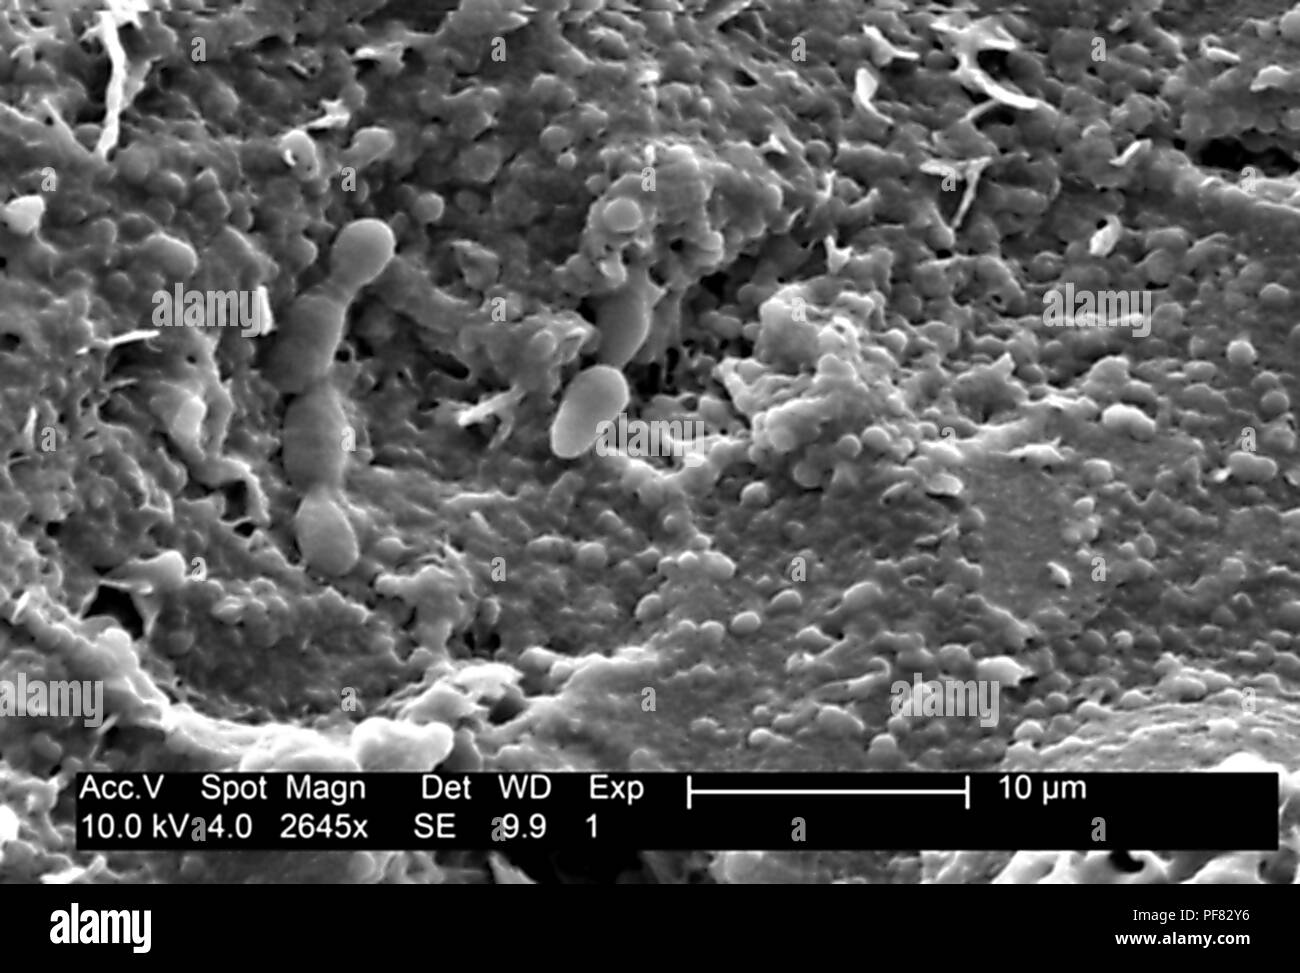 Textura de superficie se encontraron detalles sobre un melón honeydew (Cucumis melo), revelado en el 2645x magnificada electron micrograph film, 2004. Imagen cortesía de los Centros para el Control de Enfermedades (CDC). () Foto de stock